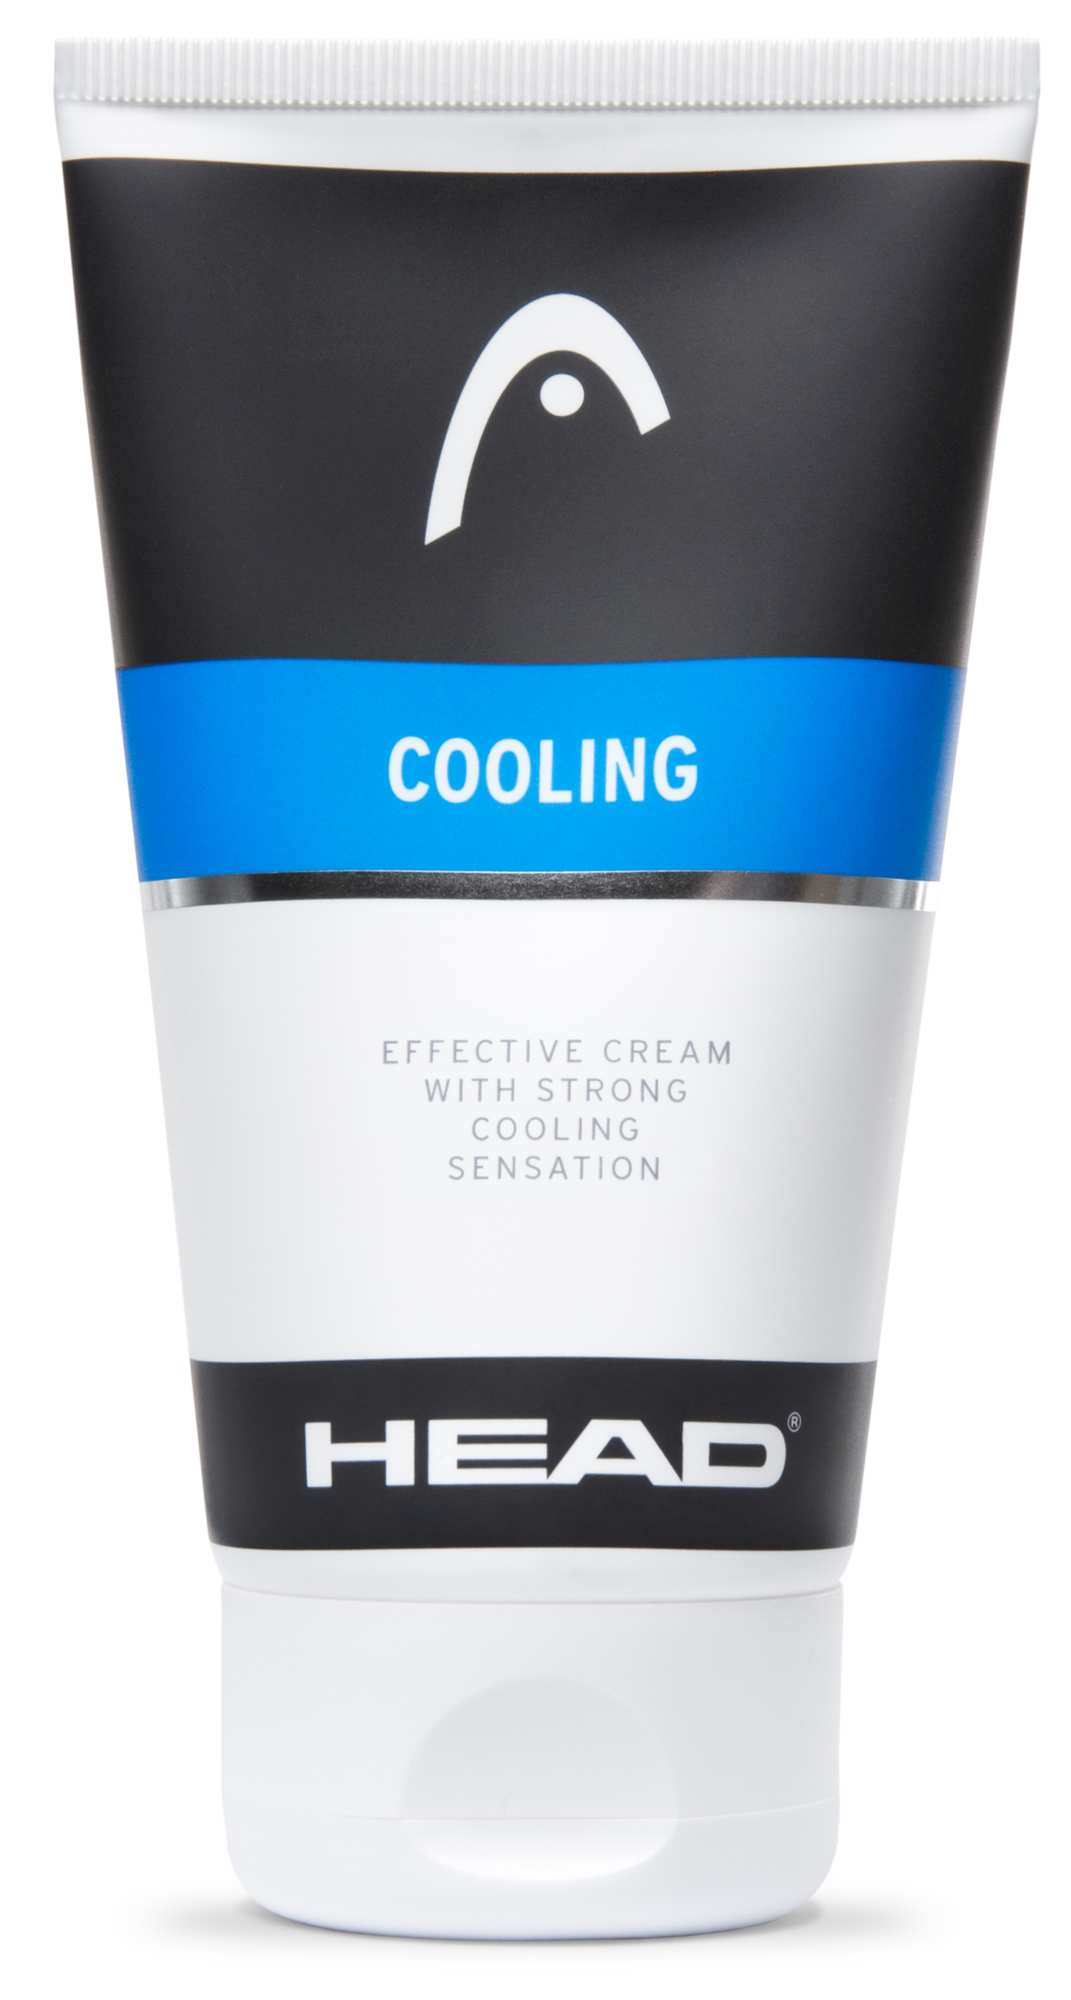 Cooling cream